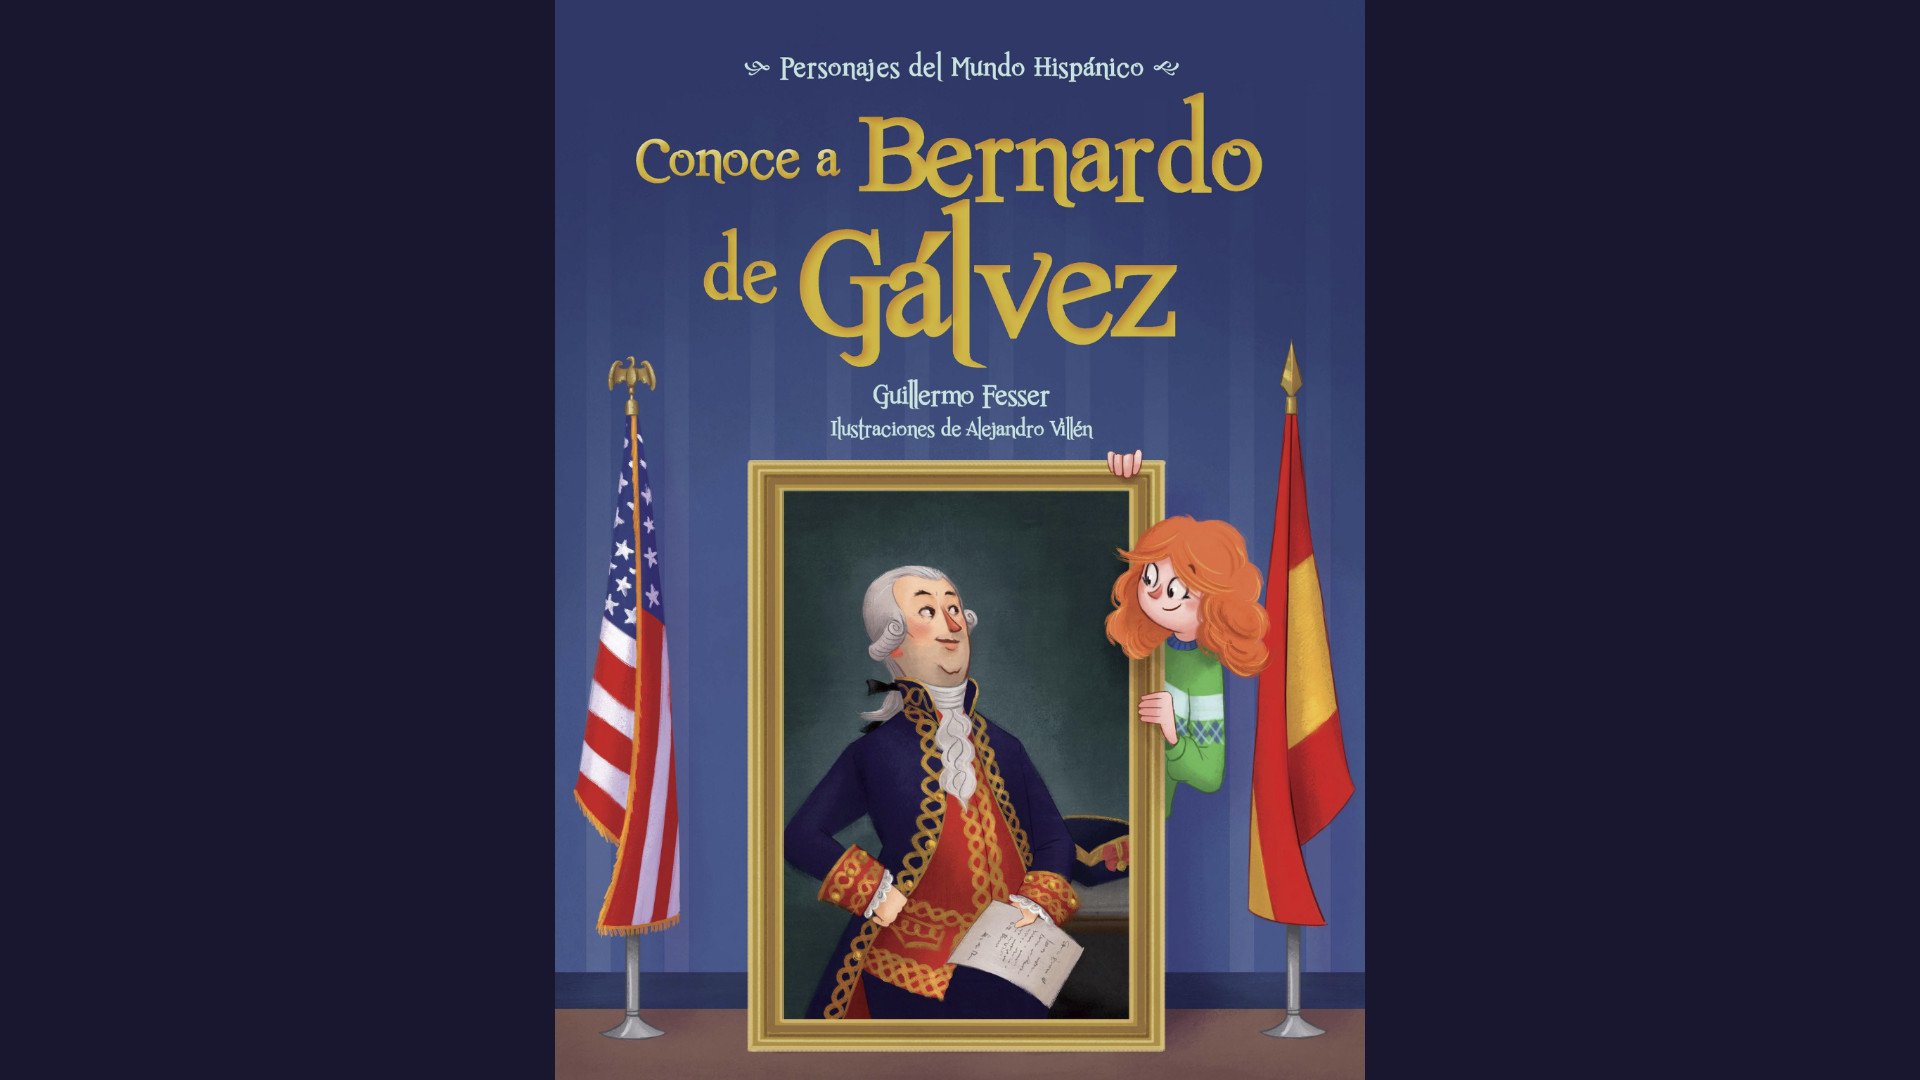 Get to Know Bernardo de Gálvez